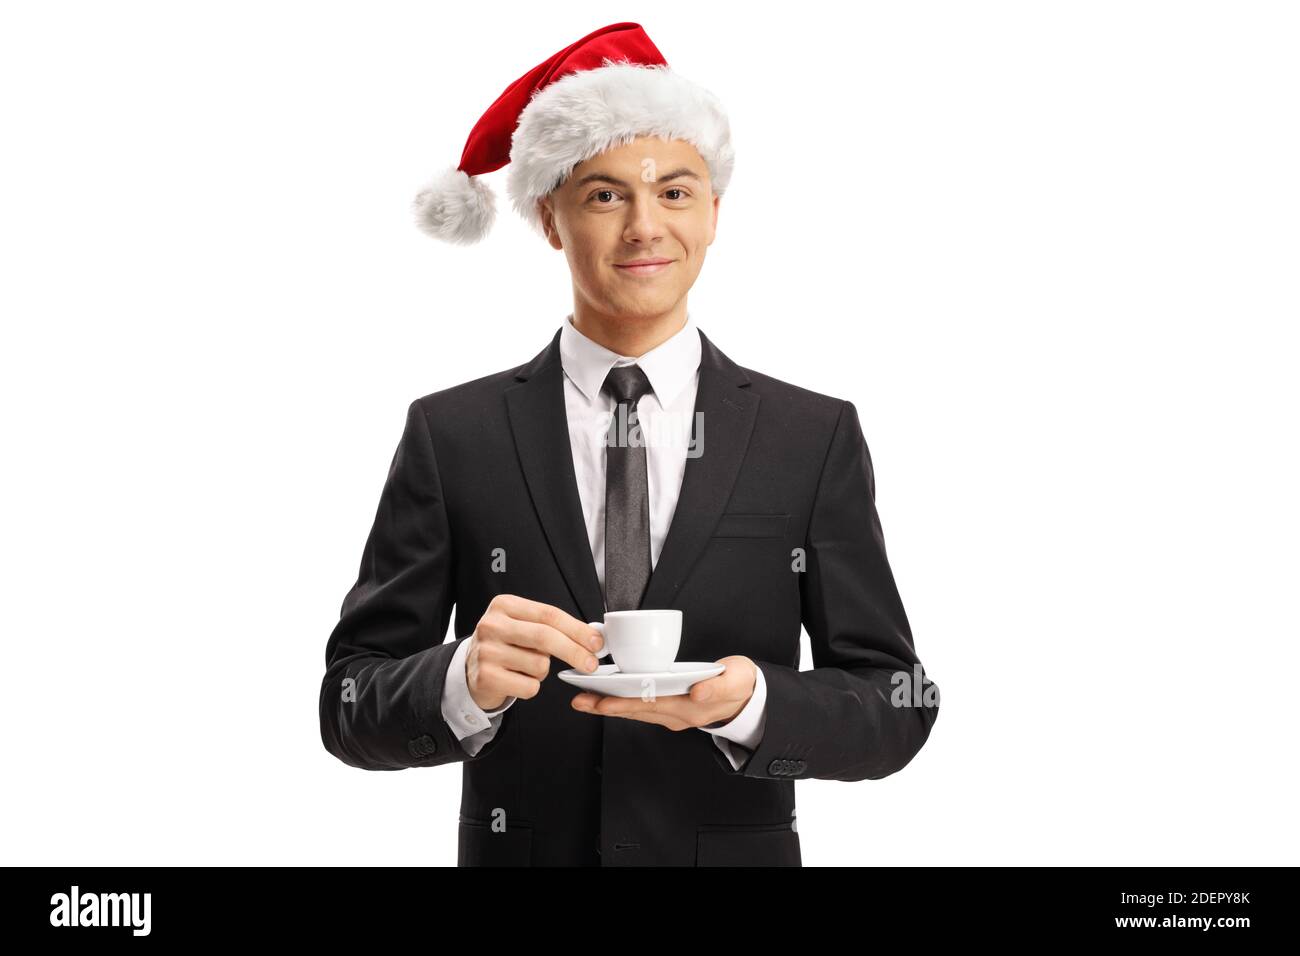 Junger Mann in einem Anzug trägt einen weihnachtsmann Hut und Halten Sie eine Espresso-Kaffeetasse isoliert auf weißem Hintergrund Stockfoto